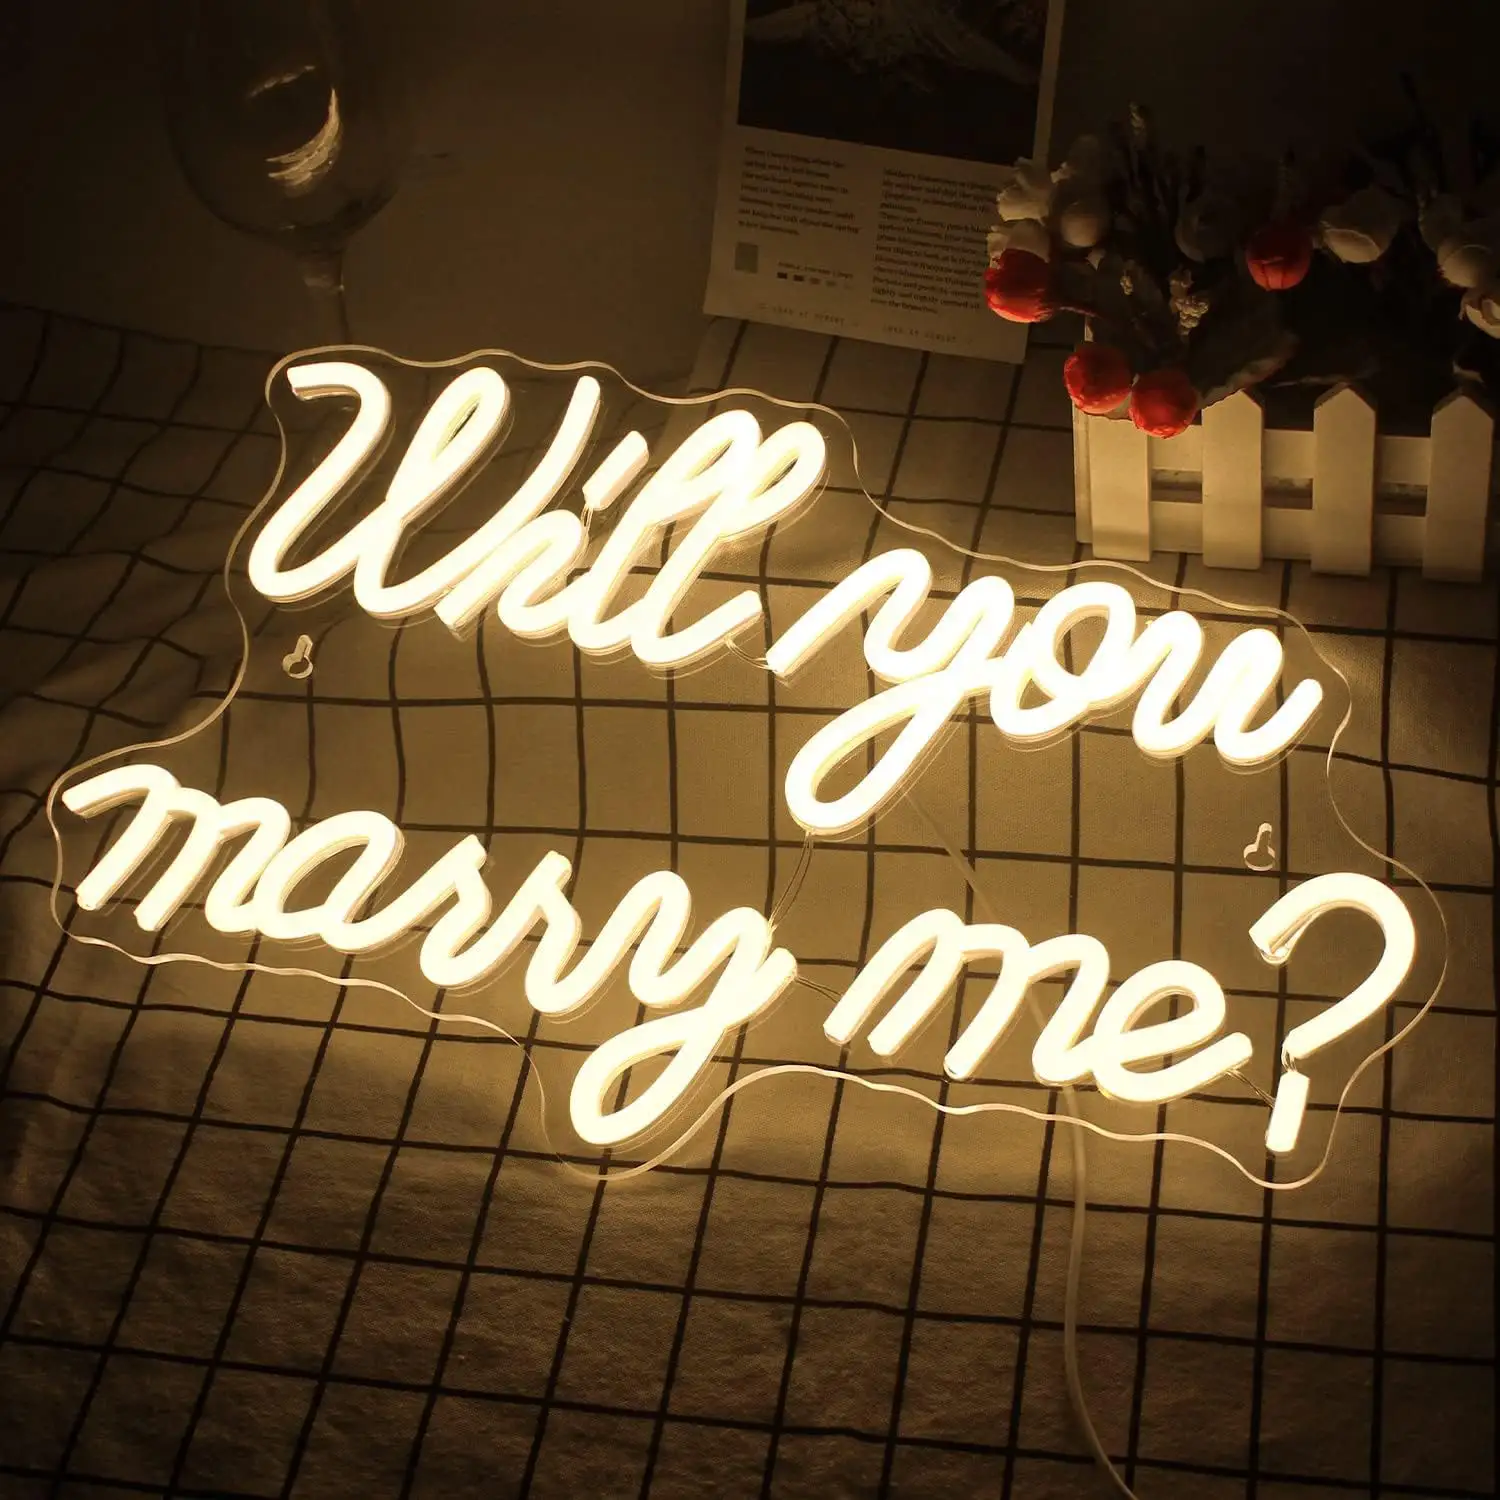 Tu queres casar comigo letreiro de néon com luzes para proposta decorações de casamento para noivado romântico letreiro de néon arte de parede para esposa